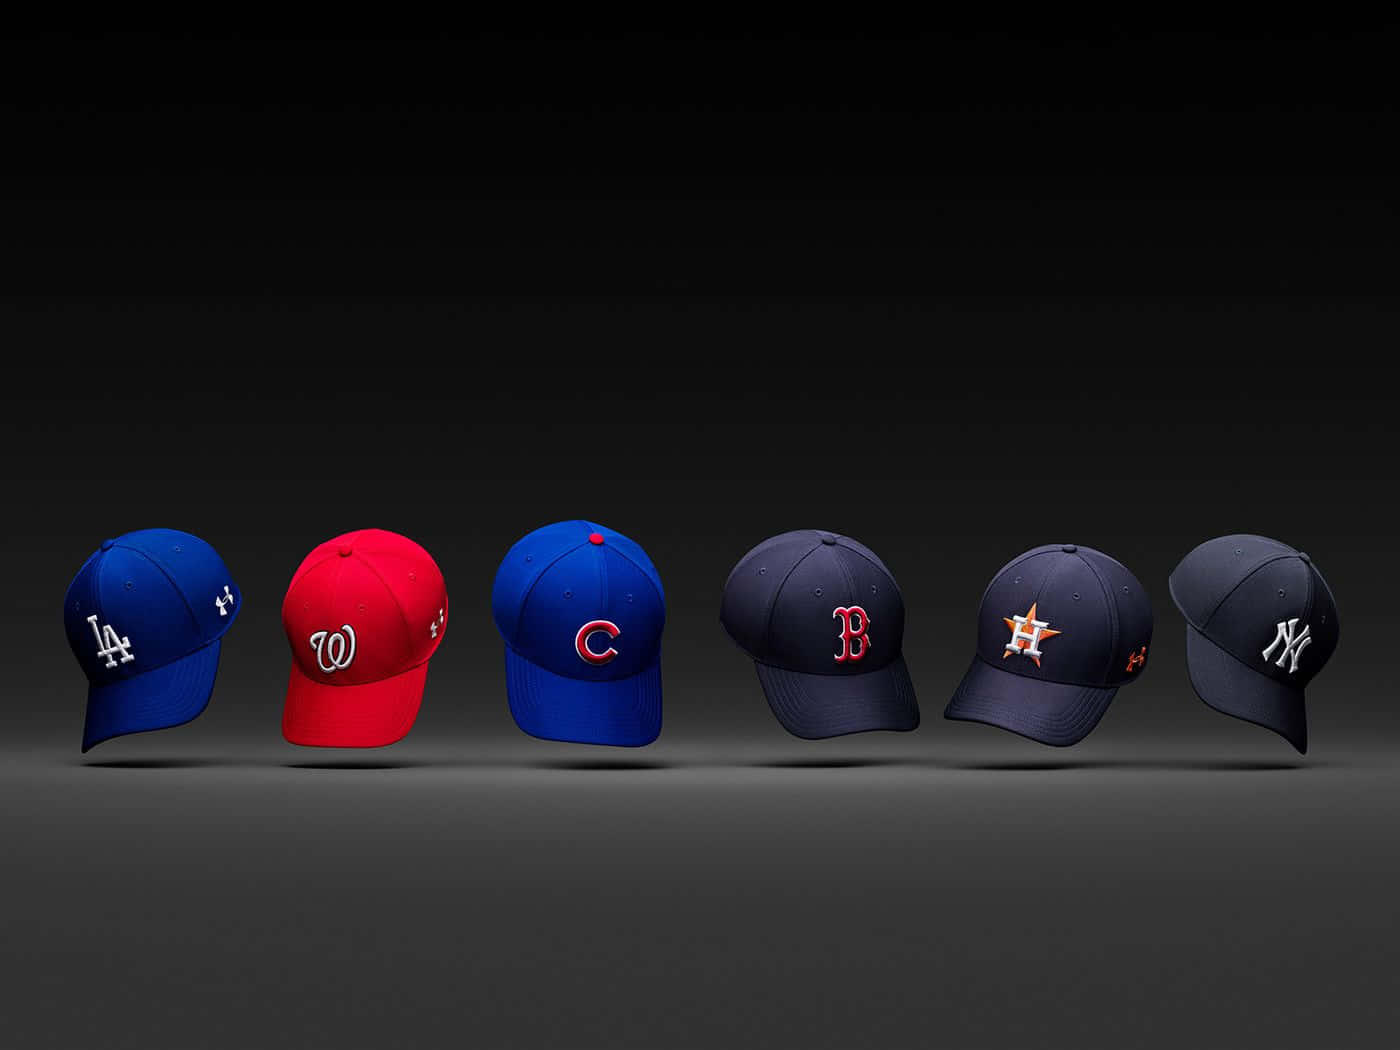 Aesthetic Mlb Baseball Caps Wallpaper